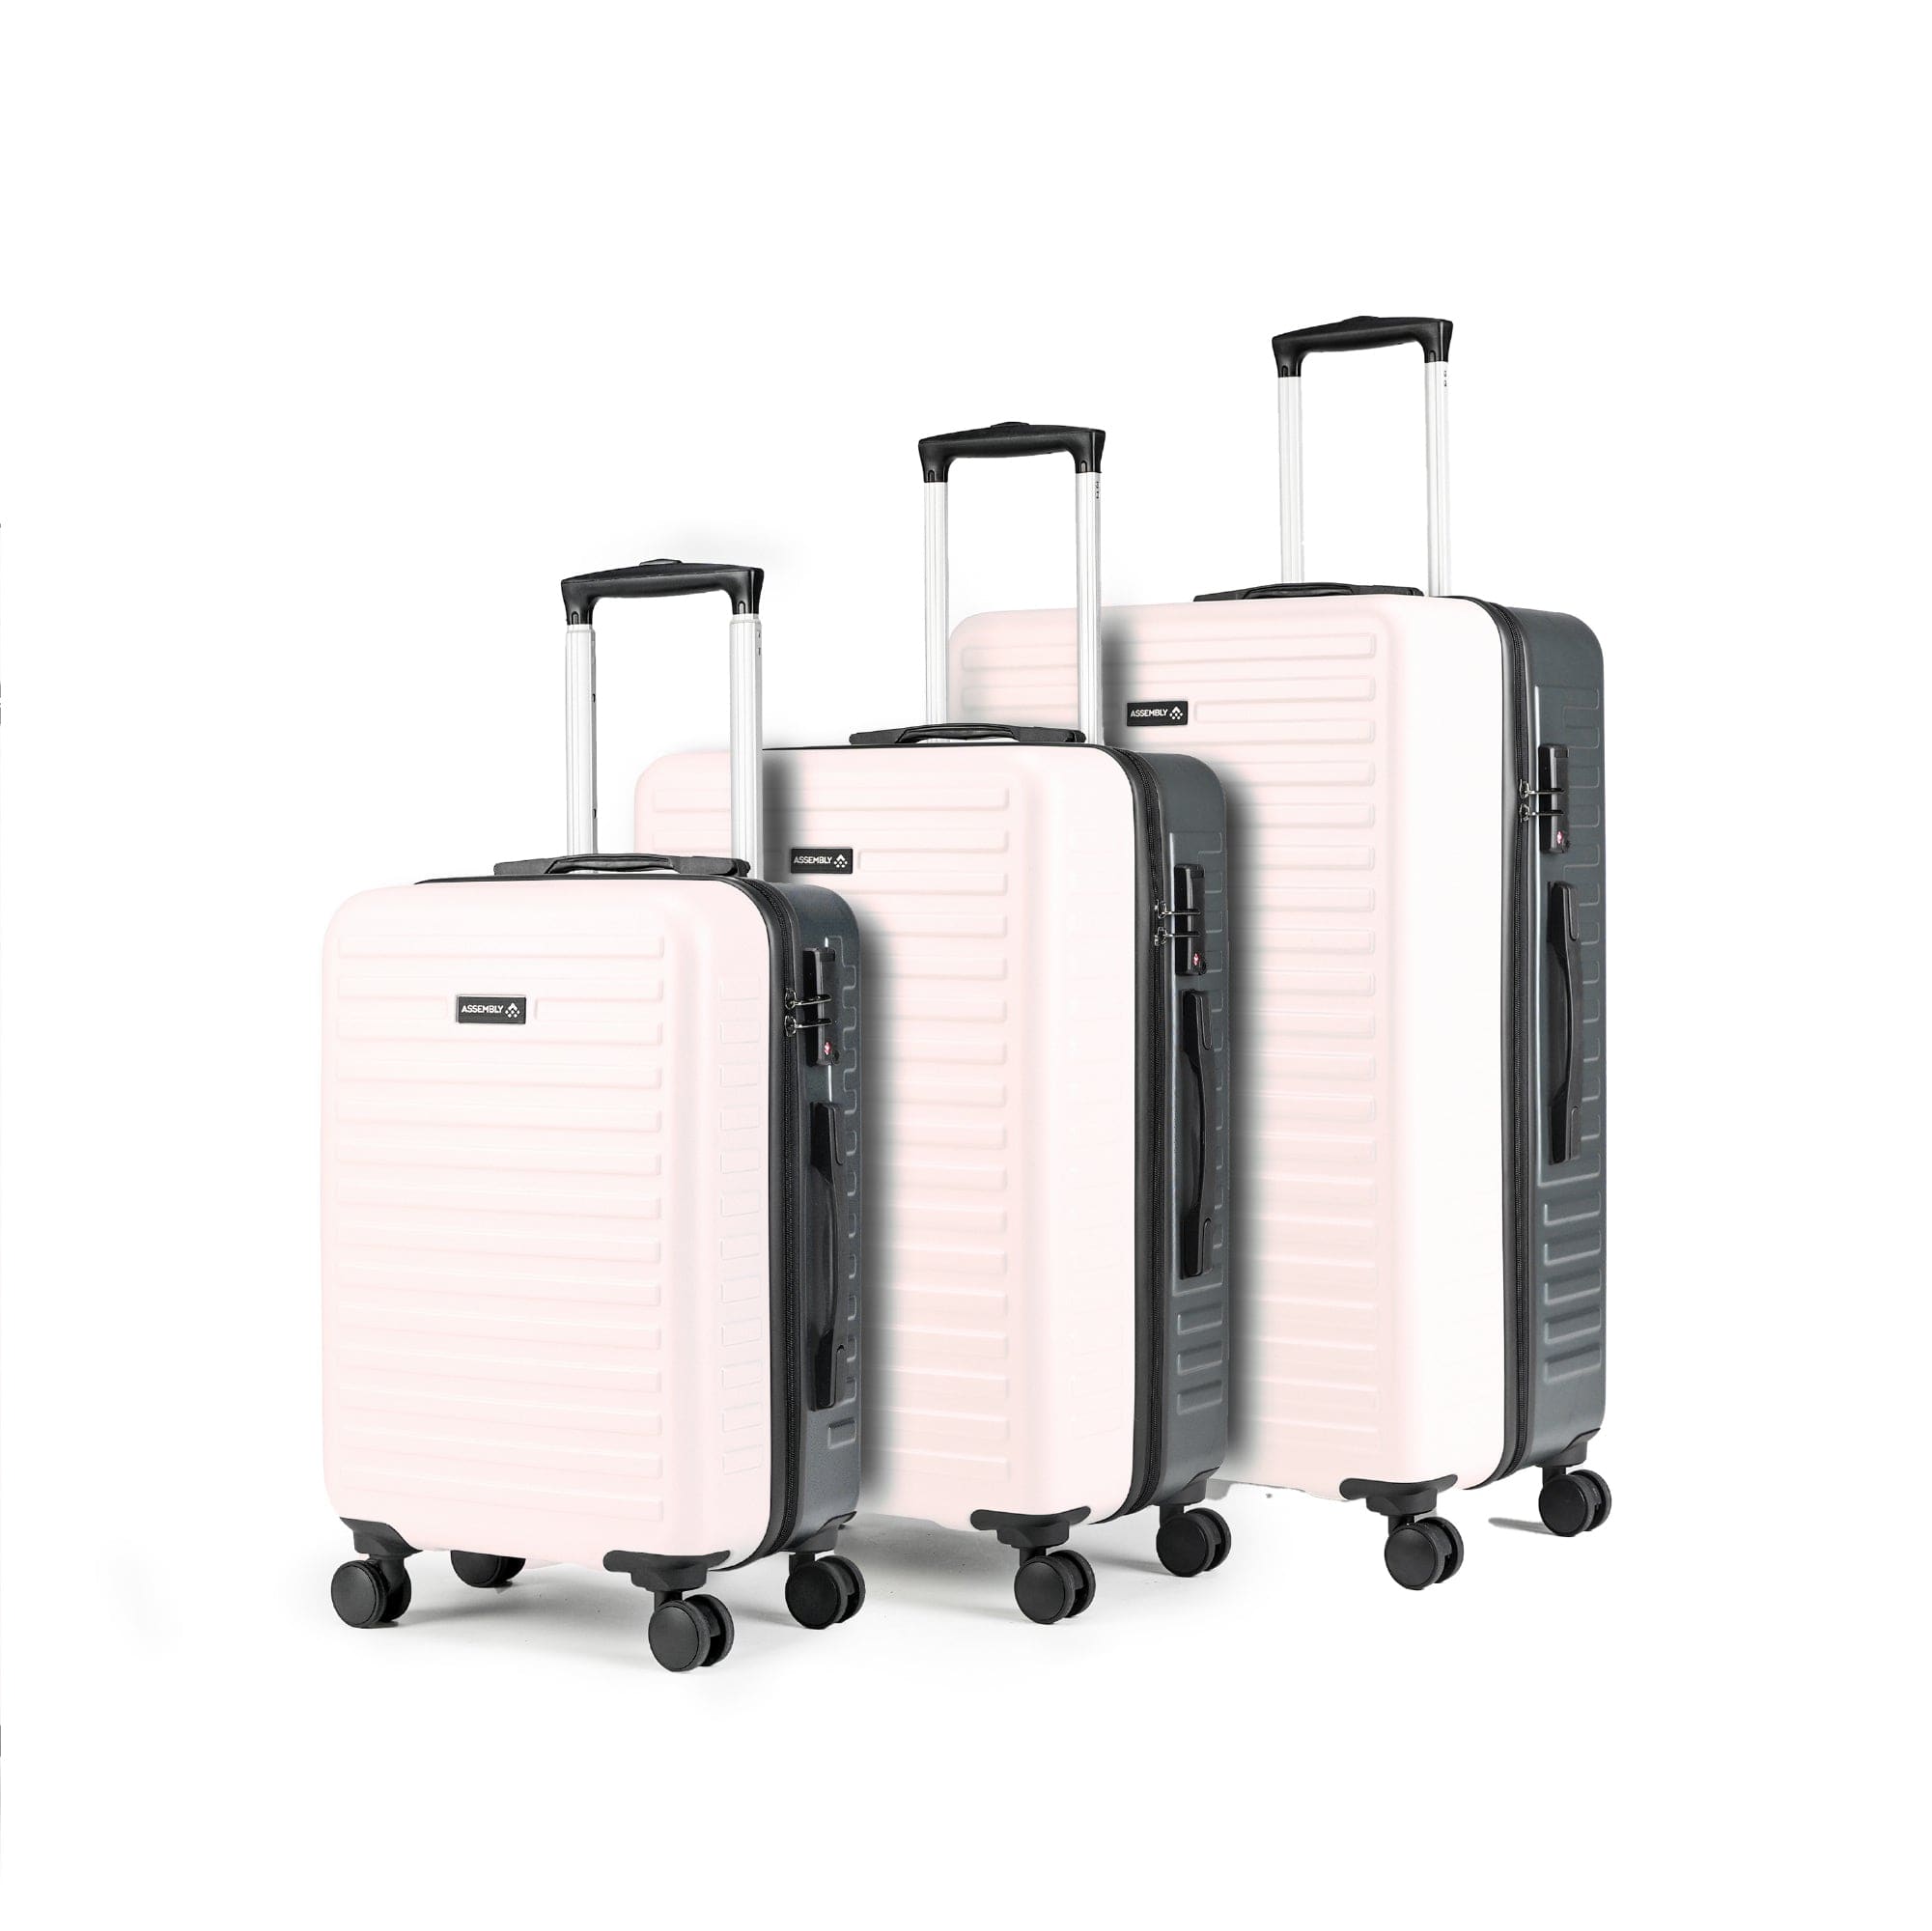 Starklite Ivory Grey Two Tone Hard-Sided Luggage (20